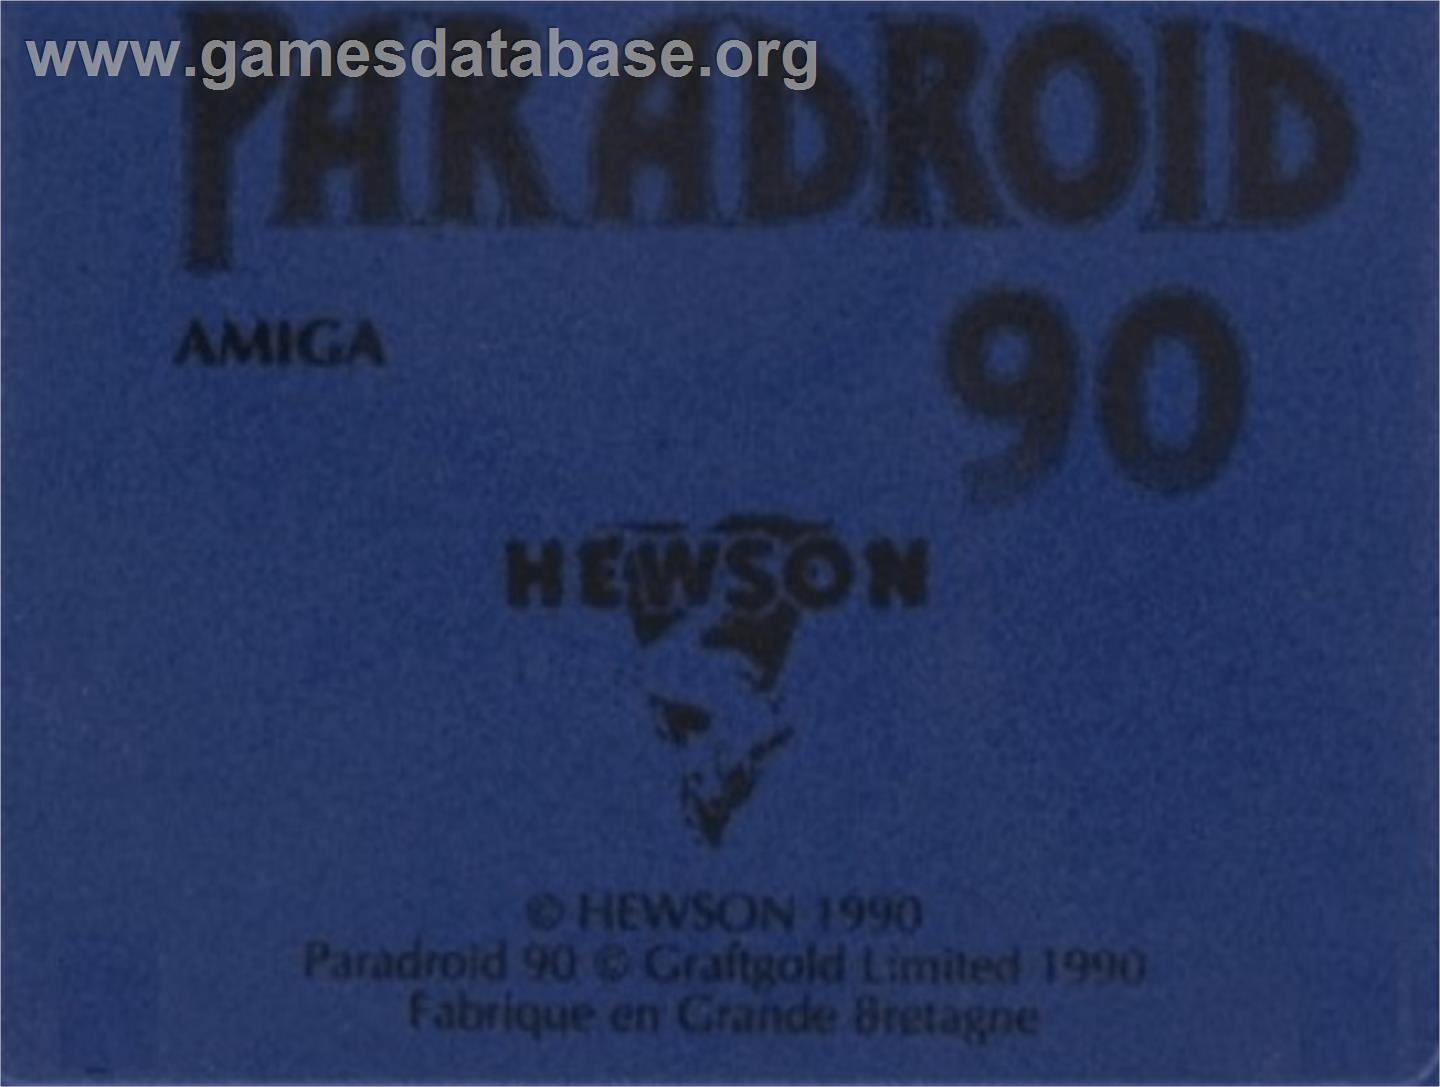 Paradroid 90 - Commodore Amiga - Artwork - Cartridge Top